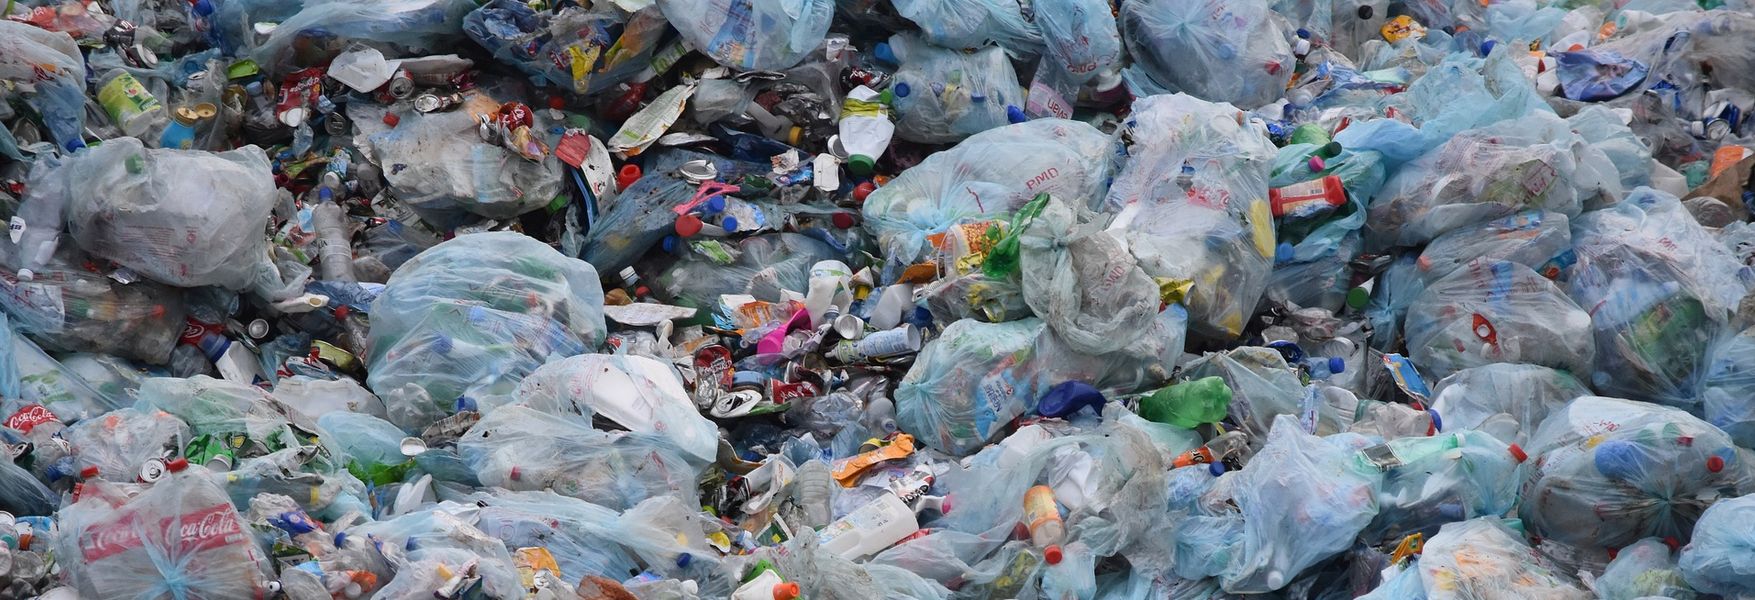 verano Influyente episodio Un planeta sin plástico 🌎 5 alternativas sostenibles | OpenMind